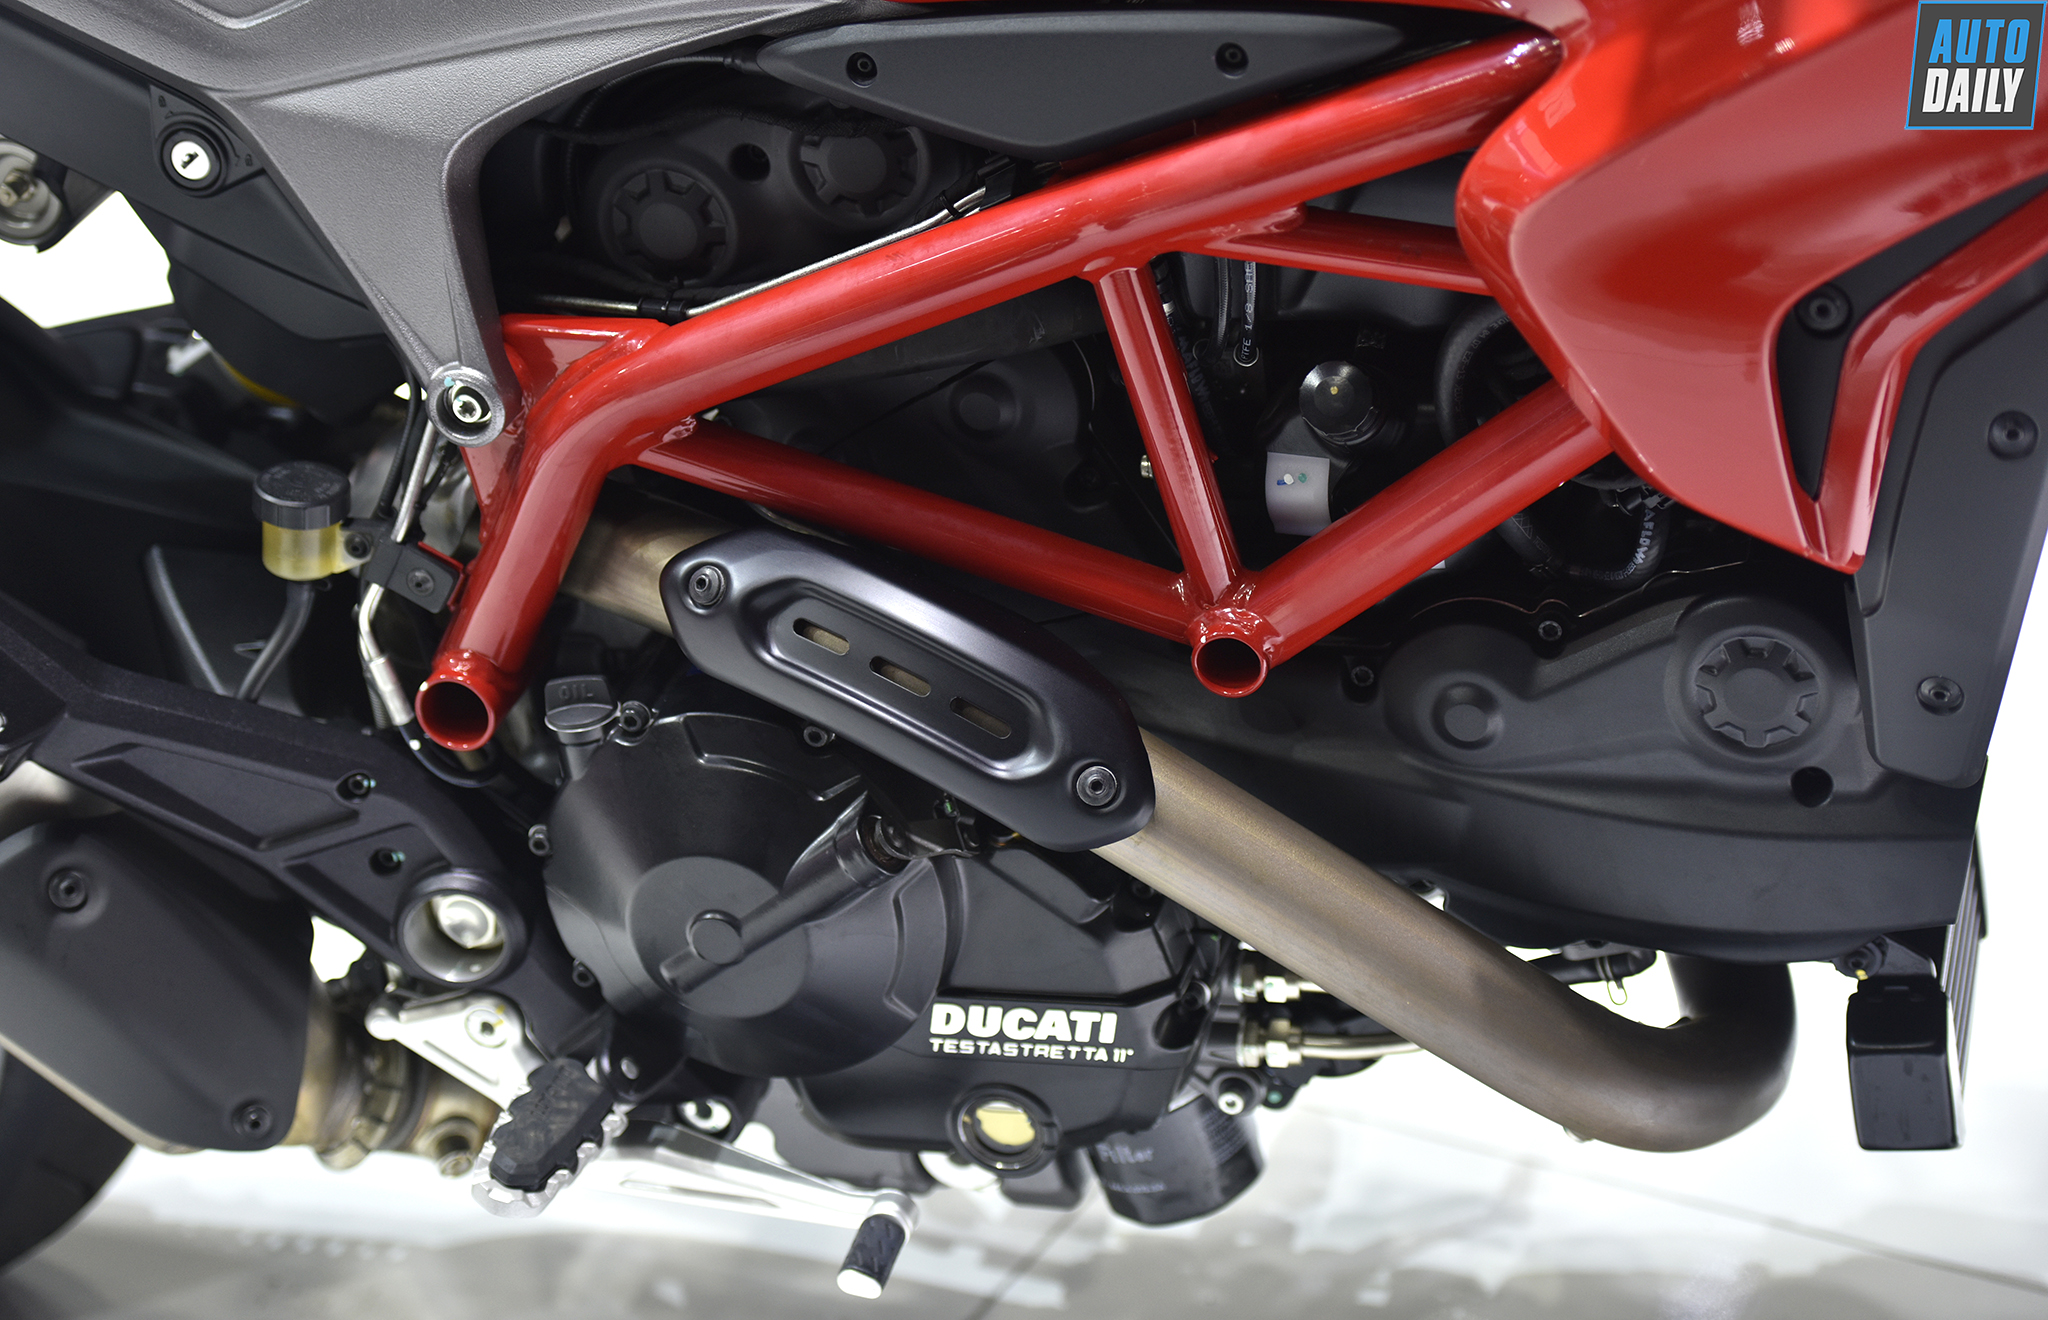 Đánh giá xe Ducati Hypermotard 939 2018 thế hệ mới kèm giá bán   MuasamXecom